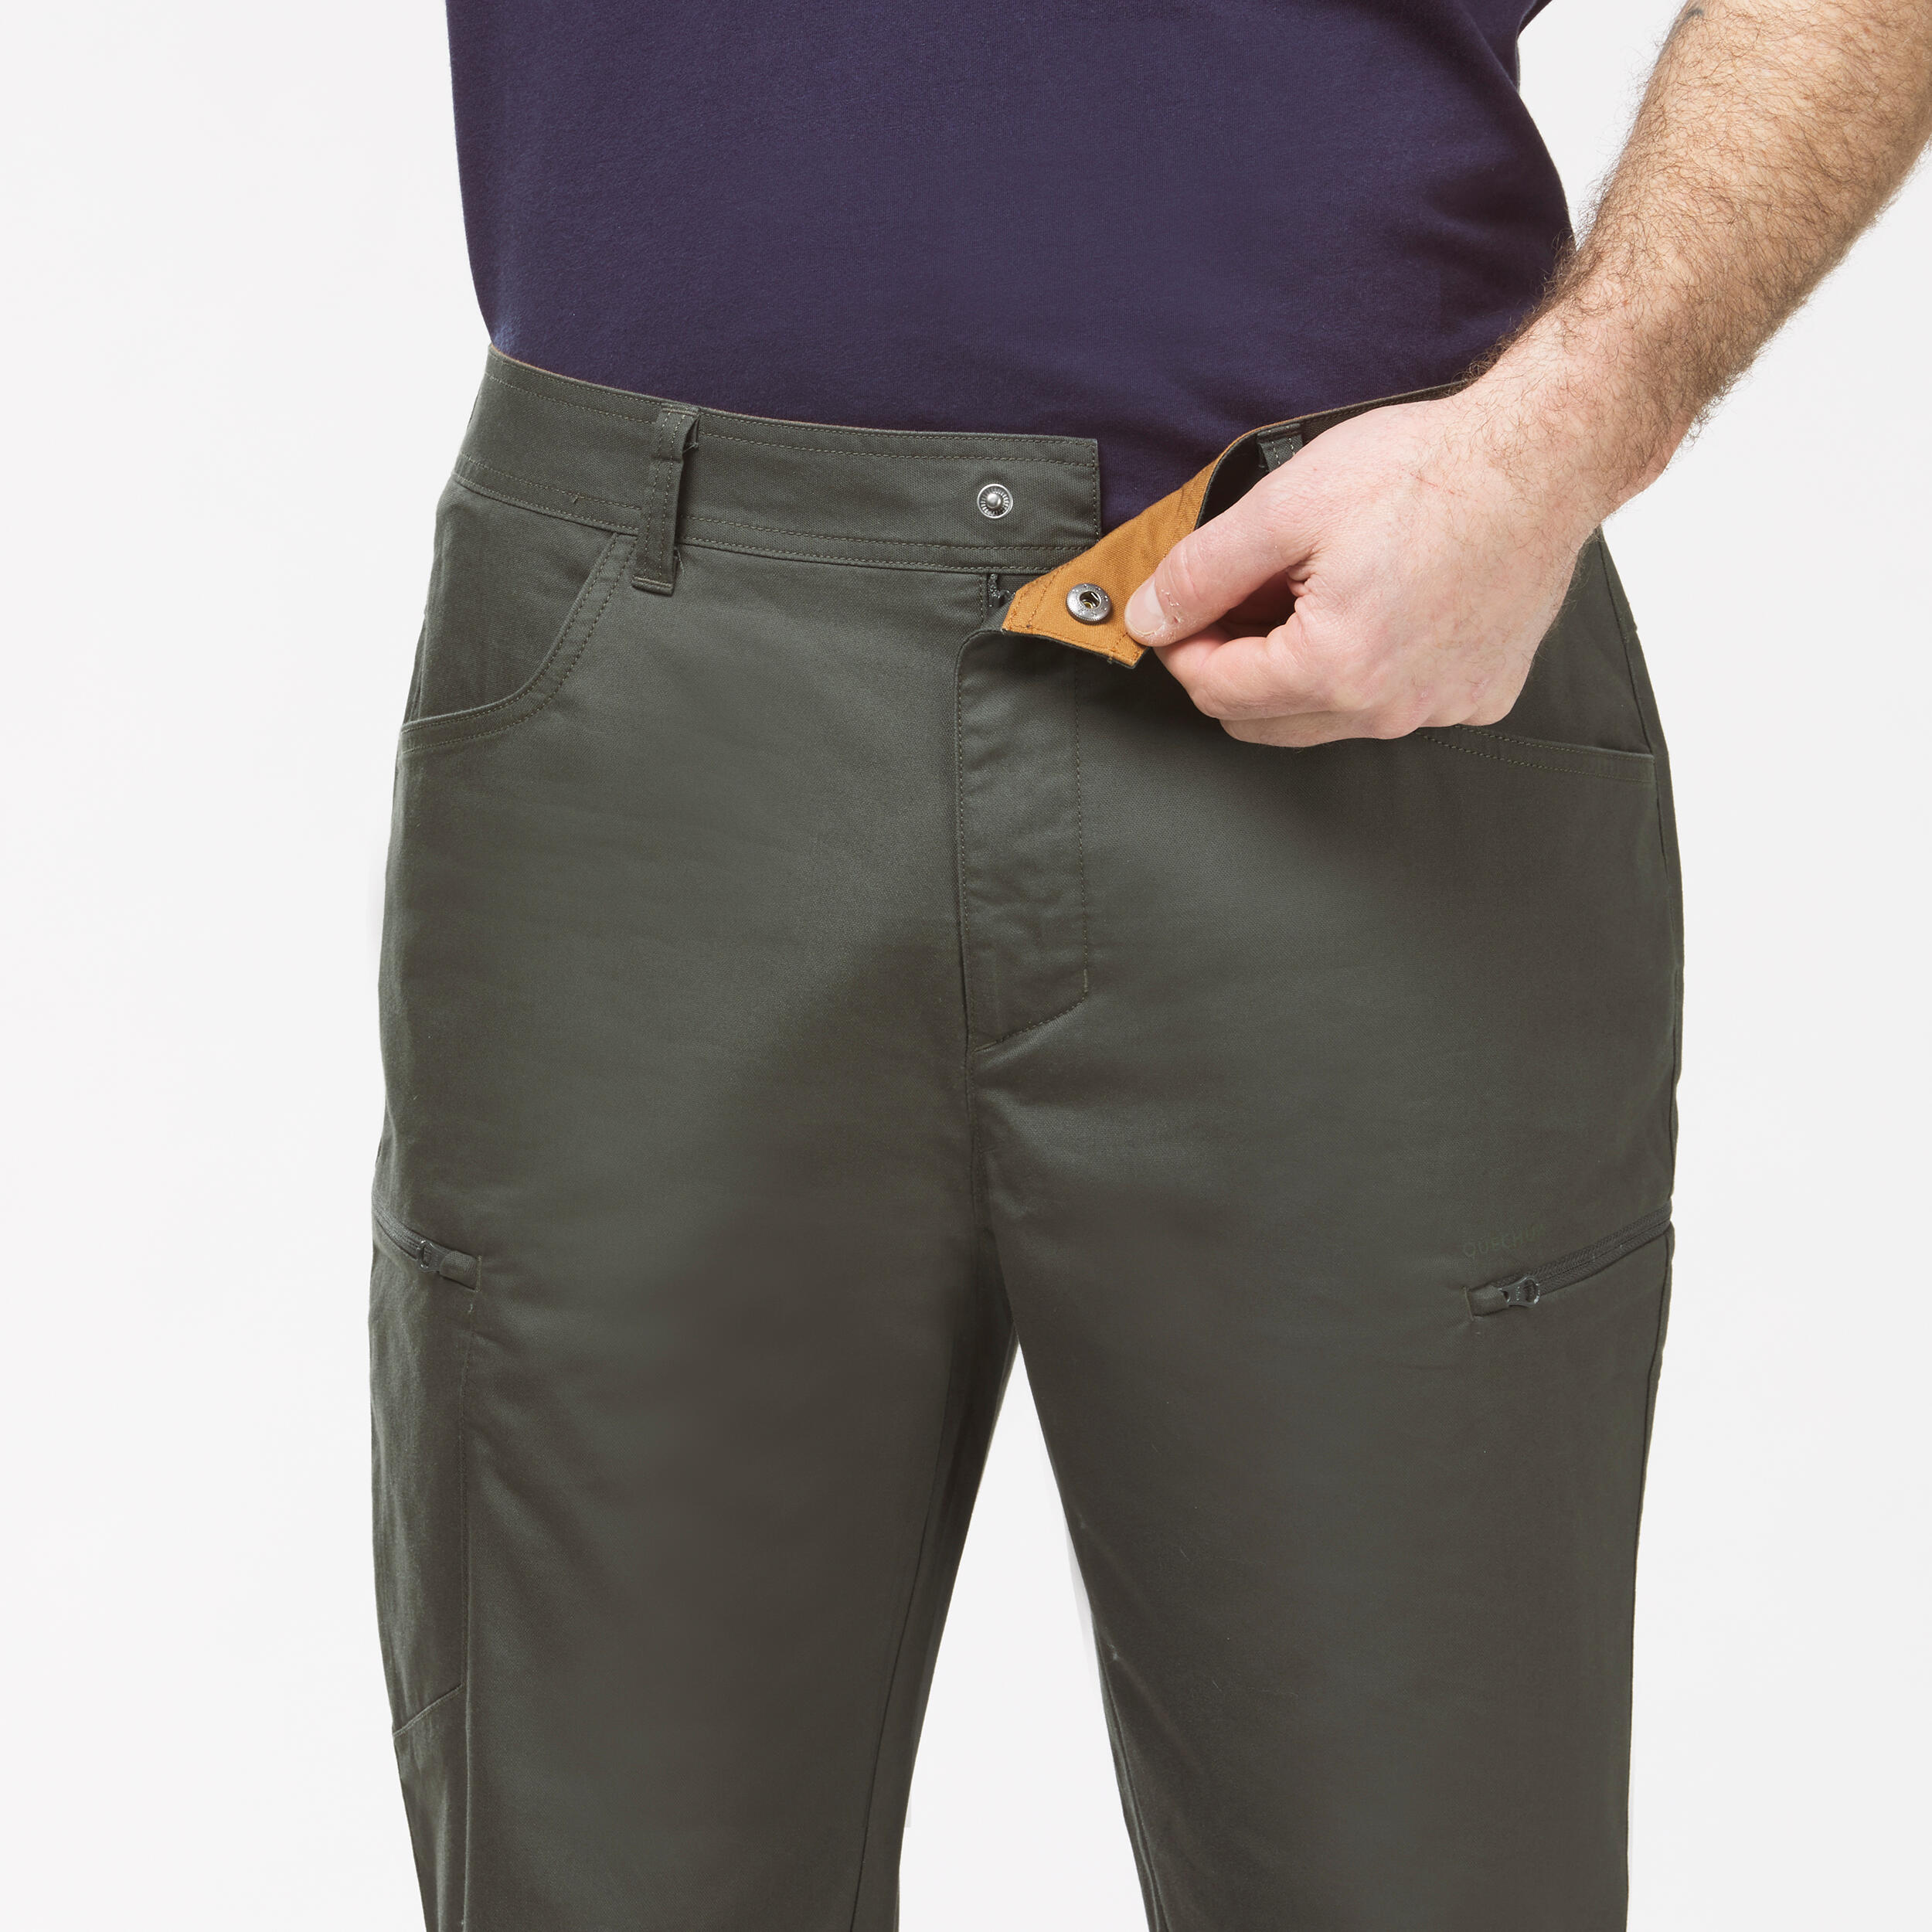 Men's NH500 Regular off-road hiking trousers 7/9